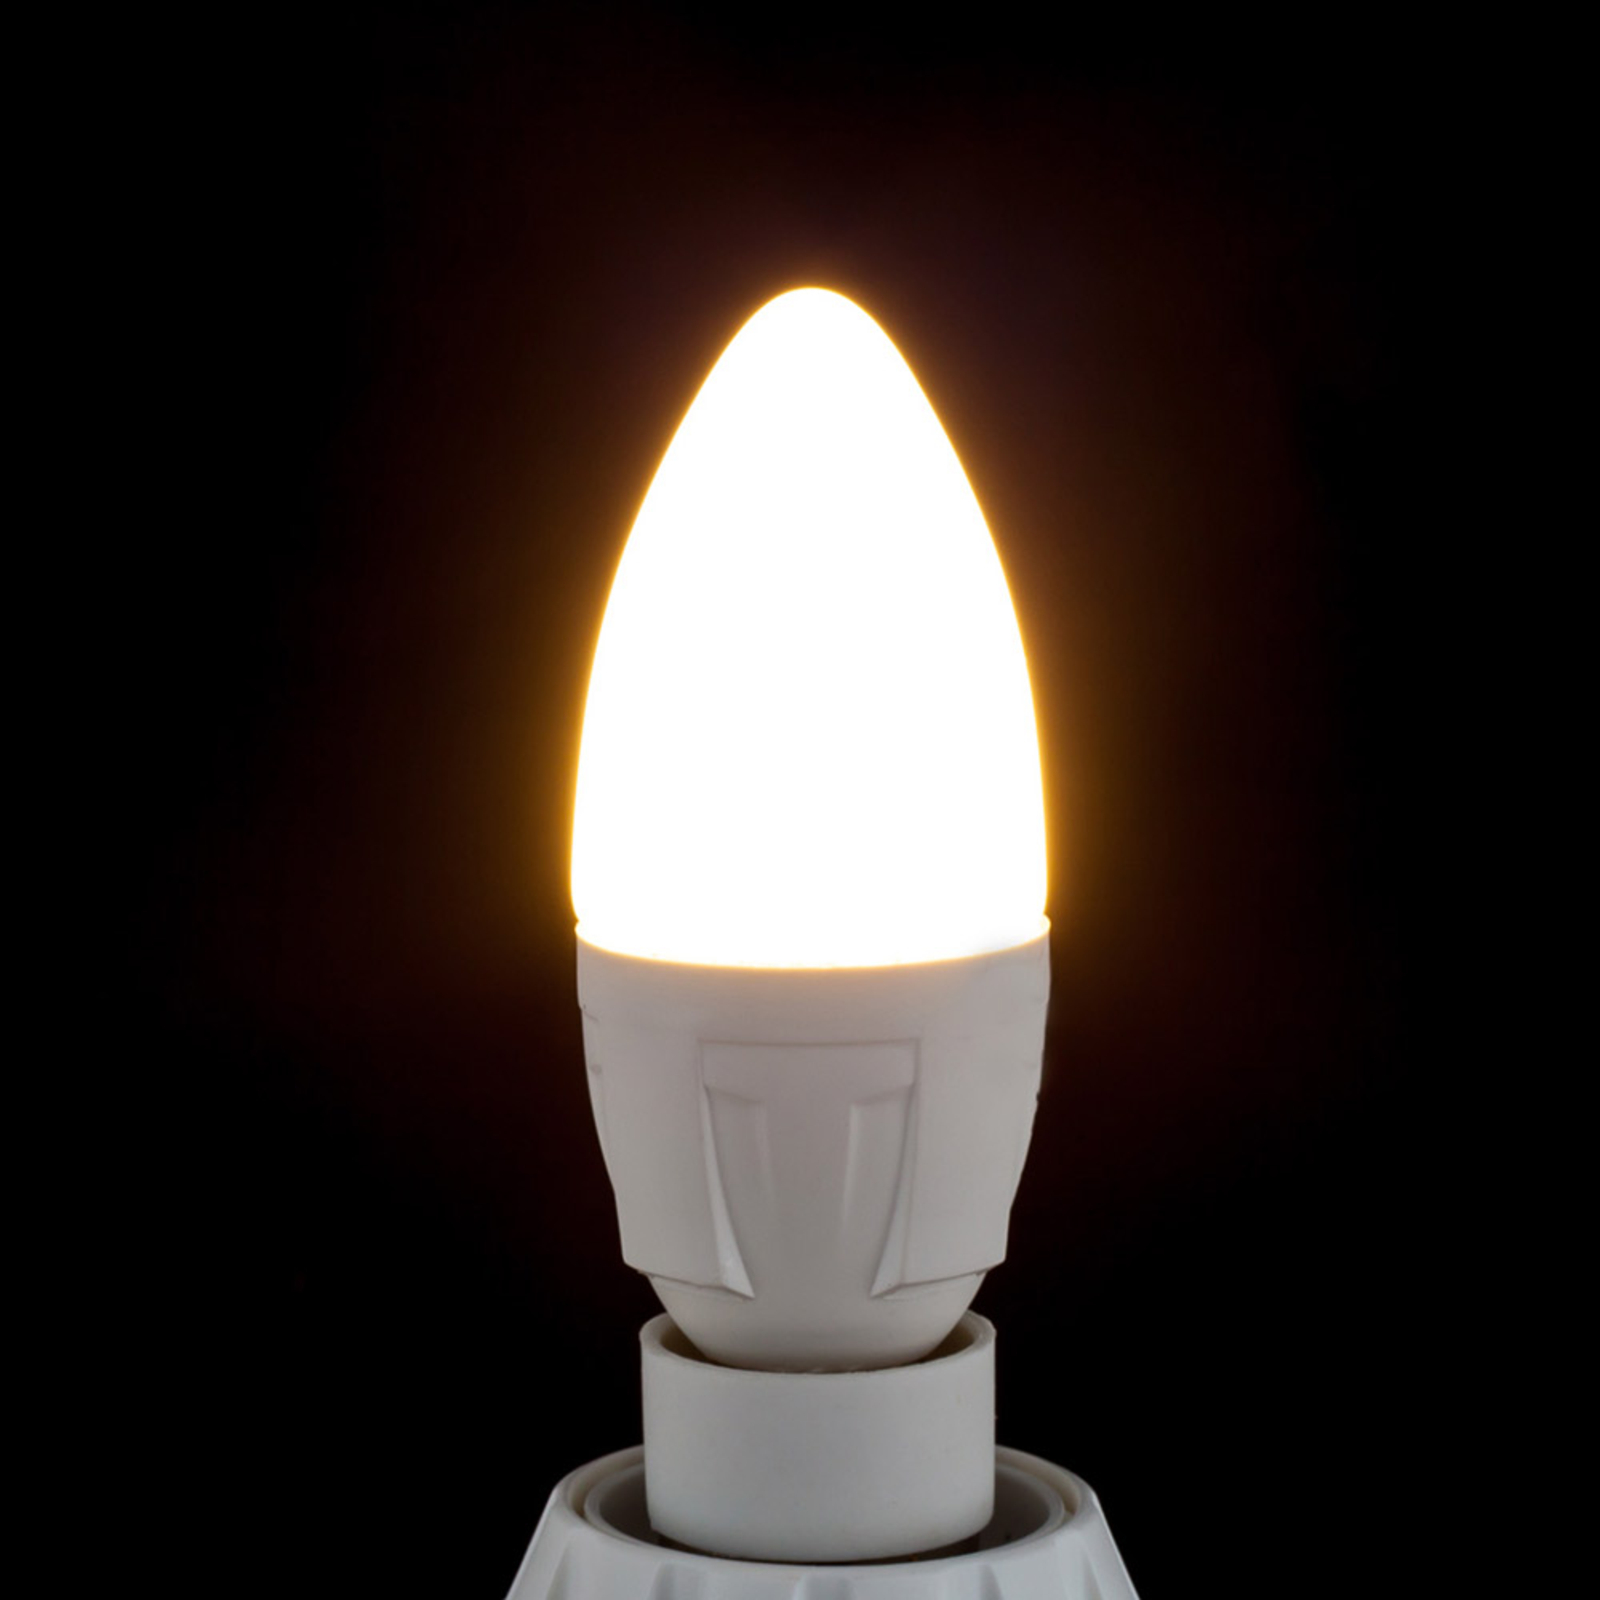 E14 4,9W 830 LED-Lampe in Kerzenform warmweiß